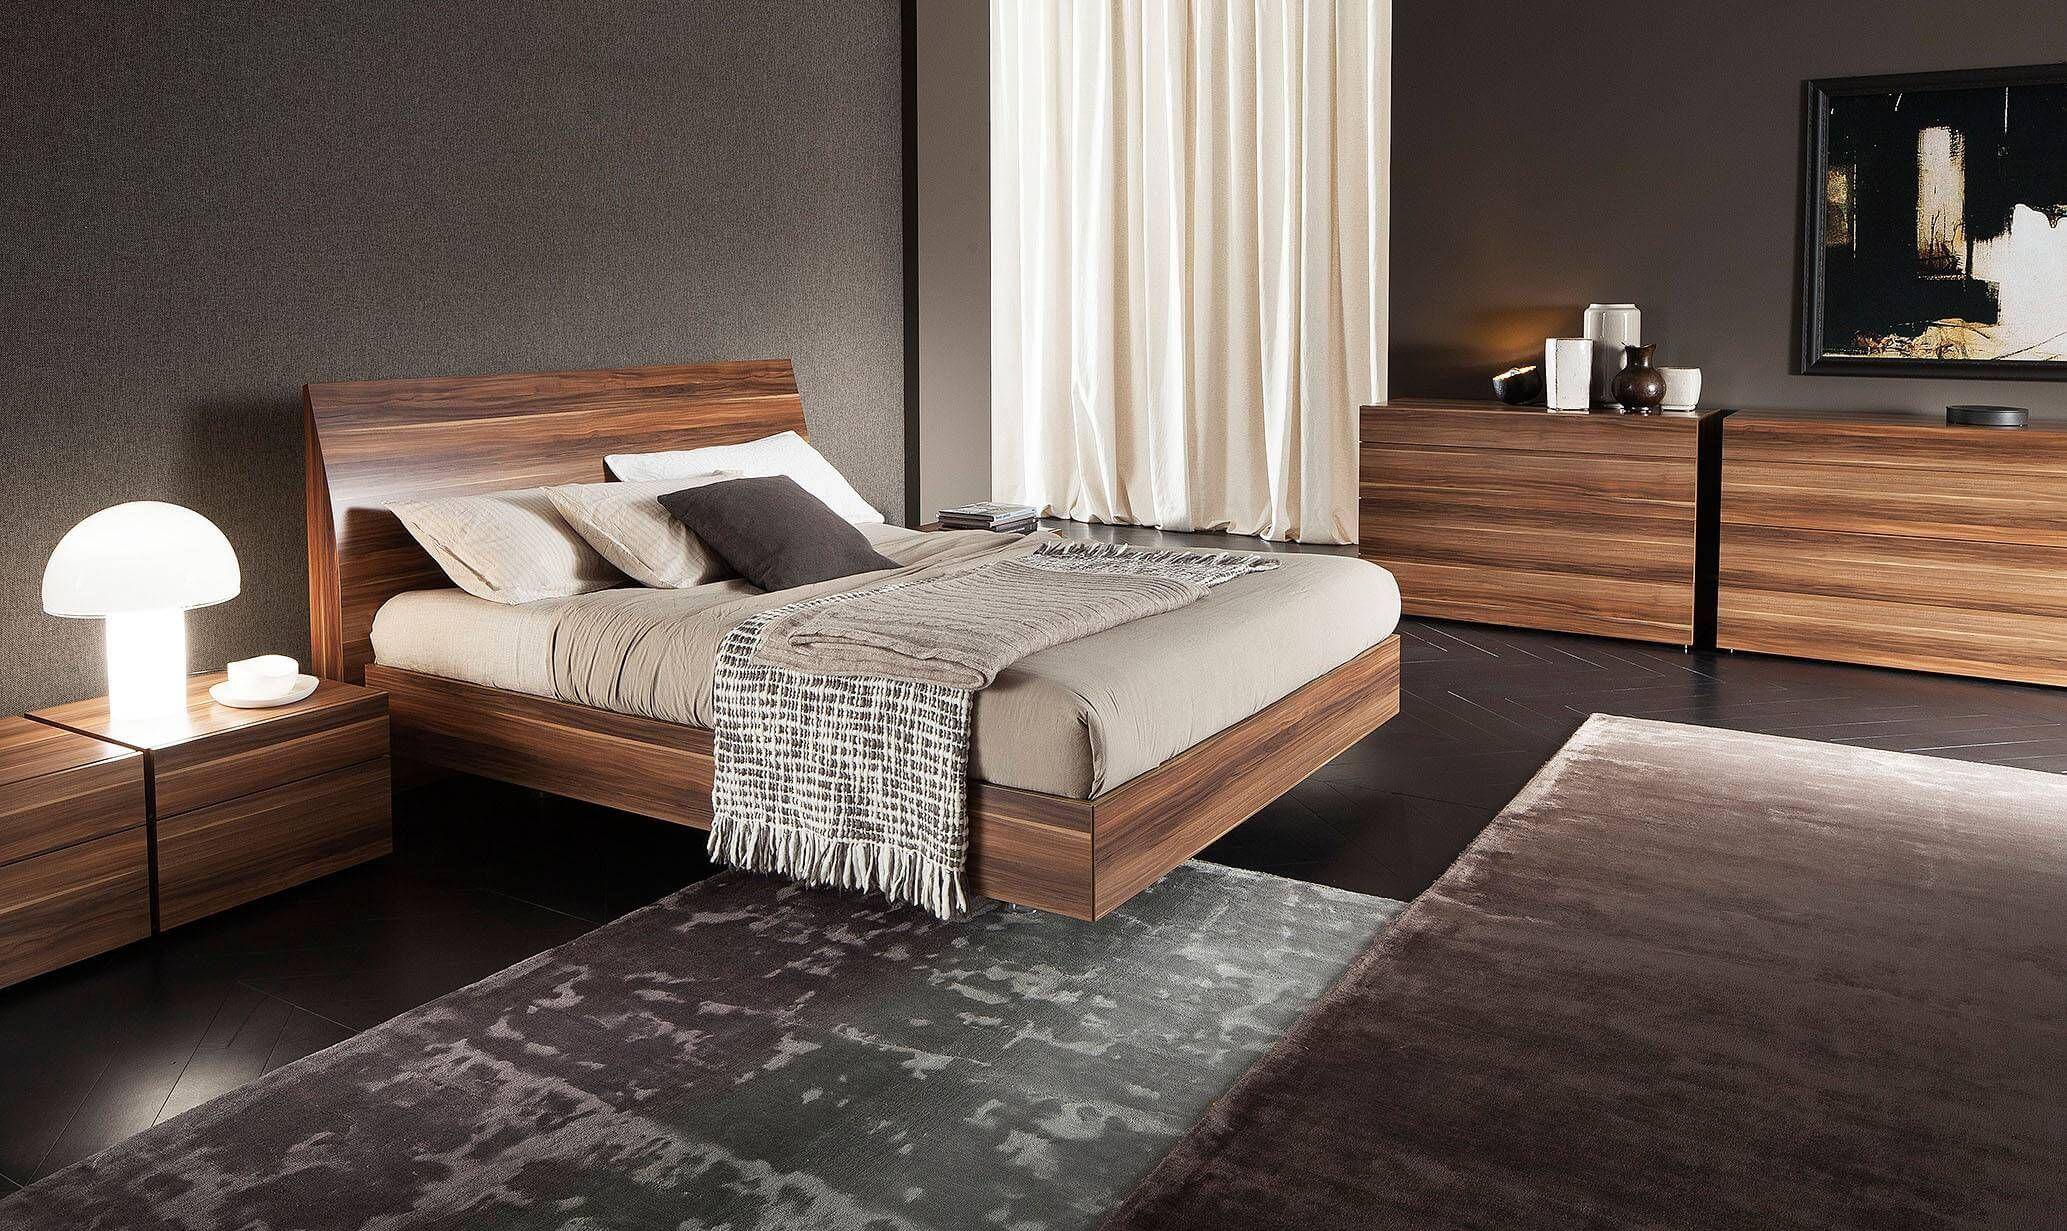 Ý tưởng phòng ngủ hiện đại sang trọng với nội thất gỗ tự nhiên